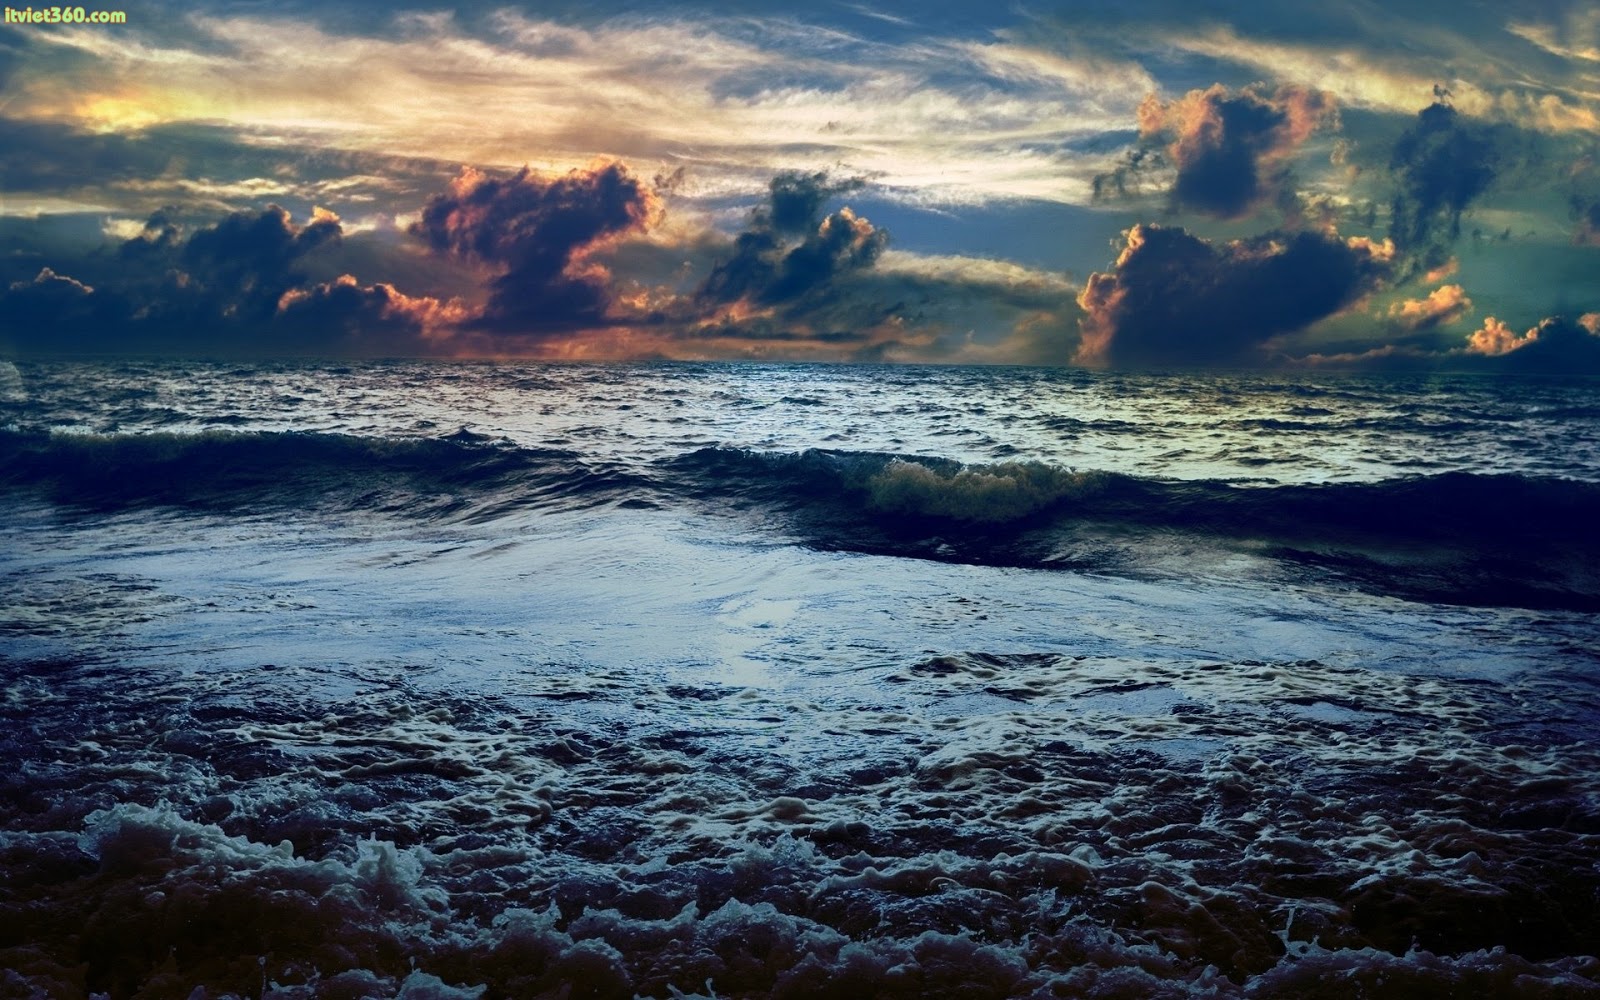 Ngắm những bức ảnh sóng biển đẹp tuyệt vời, cảm nhận hơi mặn và khát khao của những con người gan dạ khám phá. Hình ảnh tuyệt đại của biển đêm và sóng nước khiến bạn khao khát được khám phá những thế giới mới lạ.